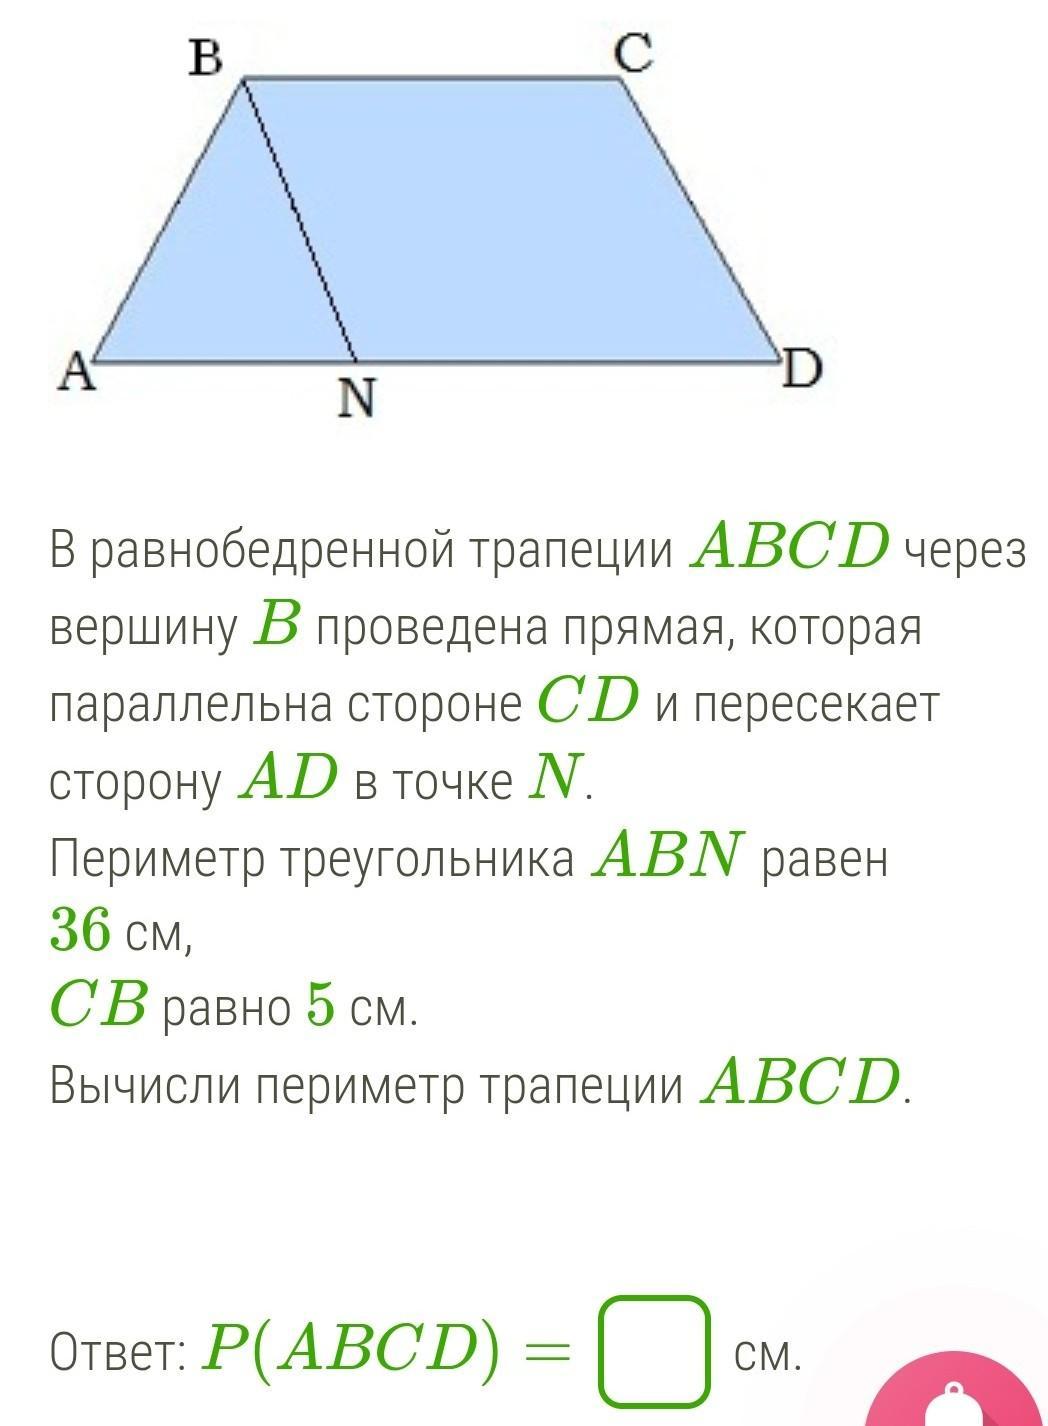 Прямые содержащие боковые стороны трапеции abcd. В равнобедренной трапеции периметр треугольника. Равнобедренная трапеция ABCD. Высота трапеции через диагонали. Периметр трапеции через диагонали.